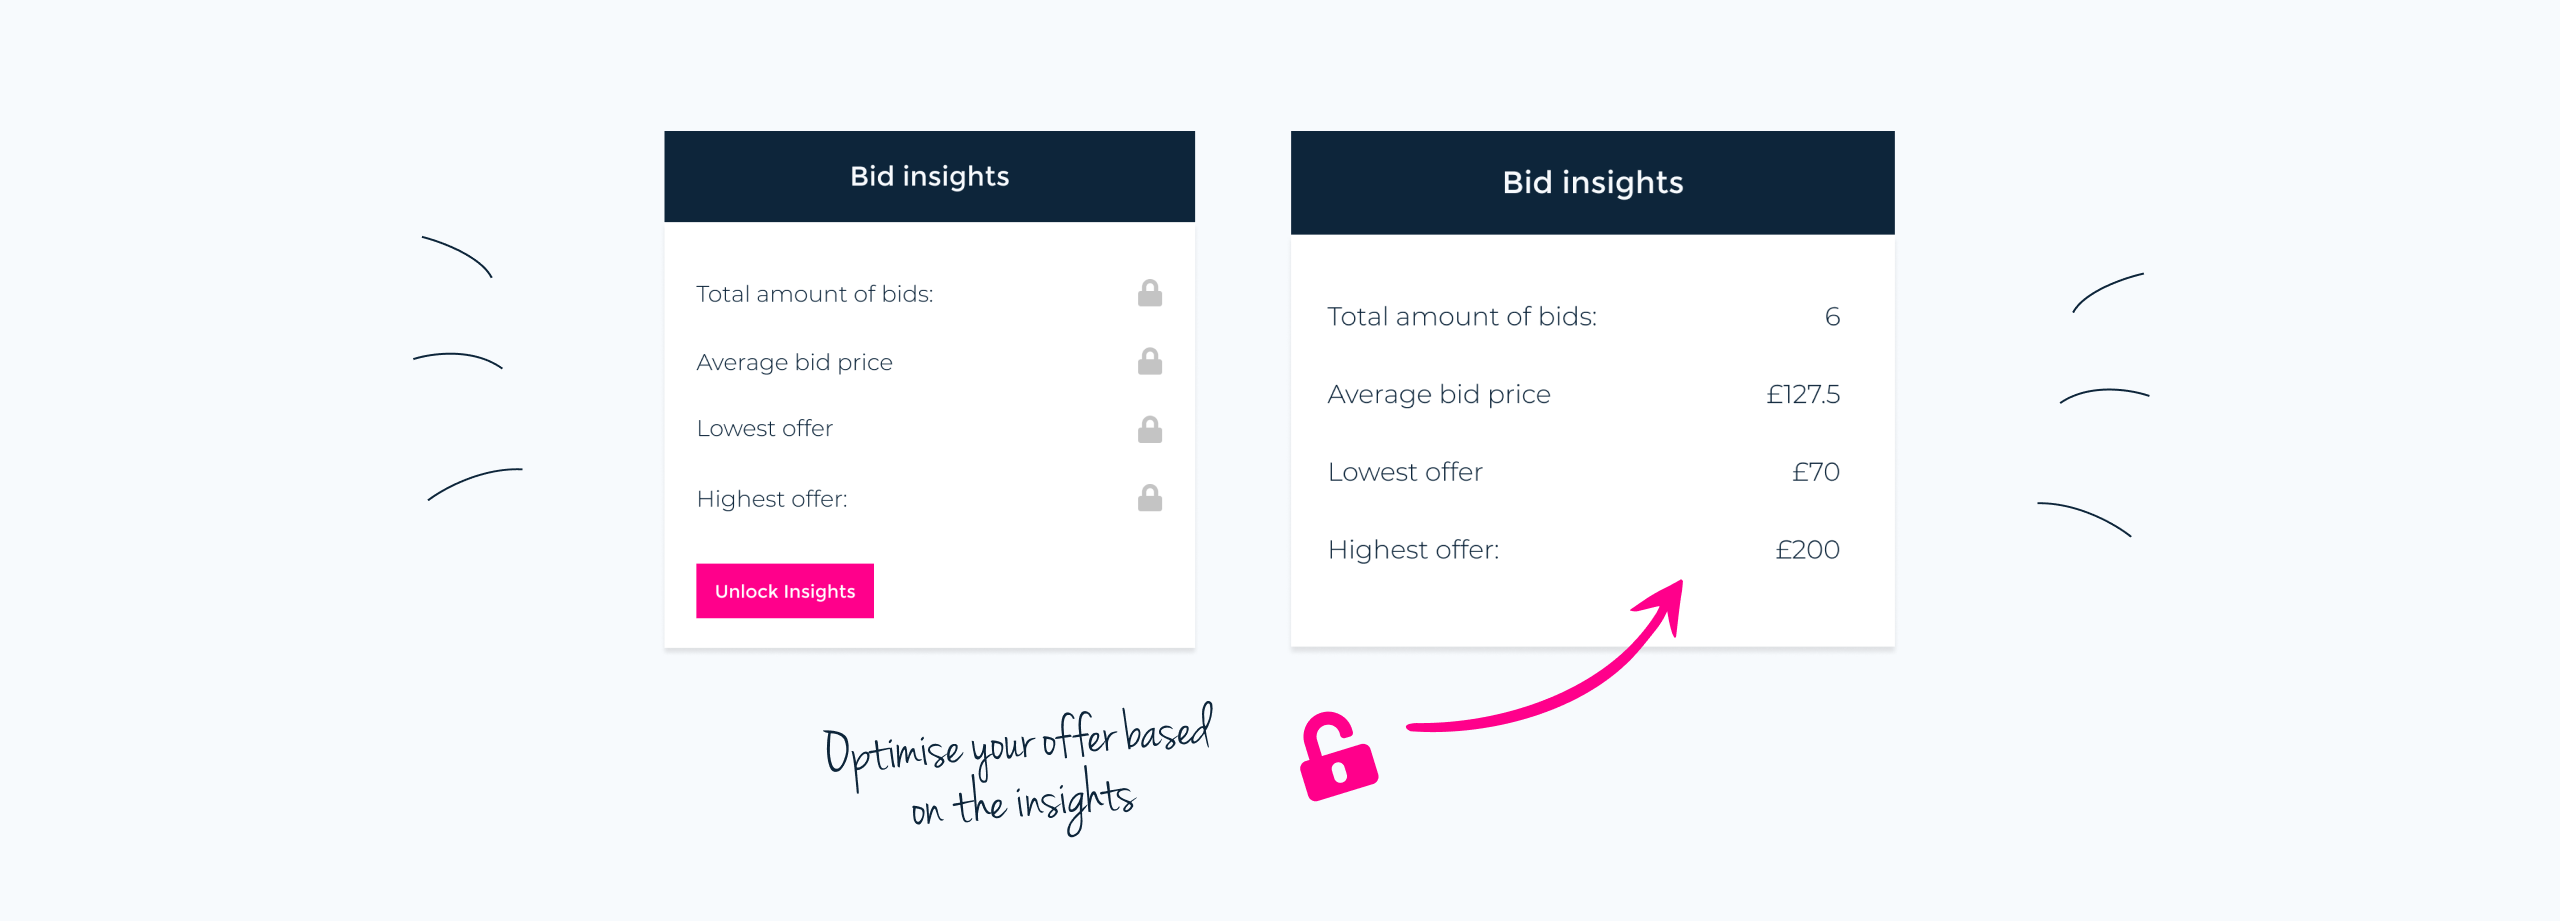 Unlock bid insights